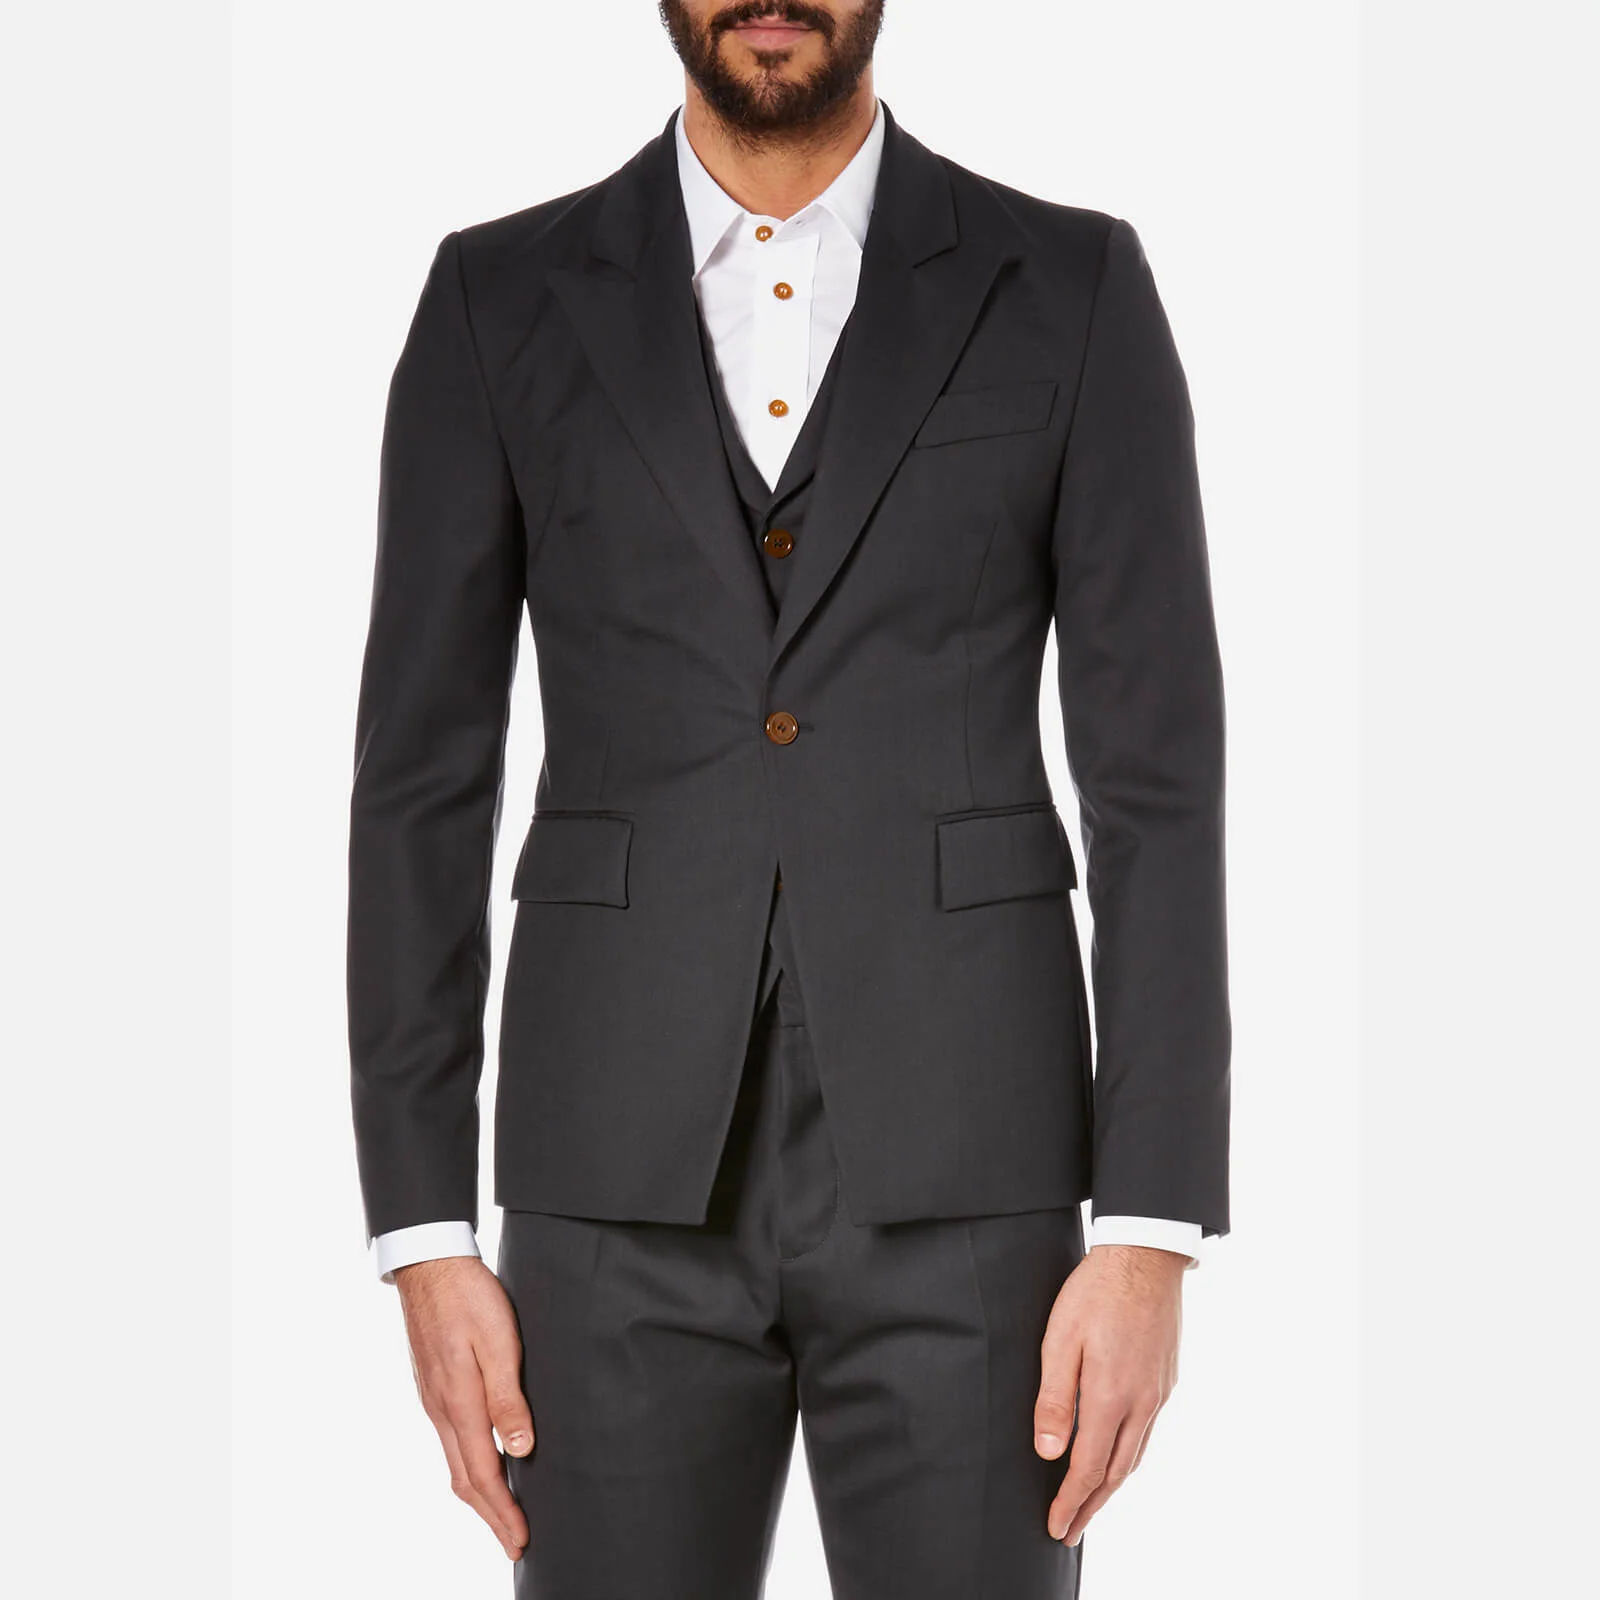 Vivienne Westwood Men's Wool Waistcoat and Suit Jacket - Smoky Black Image 1